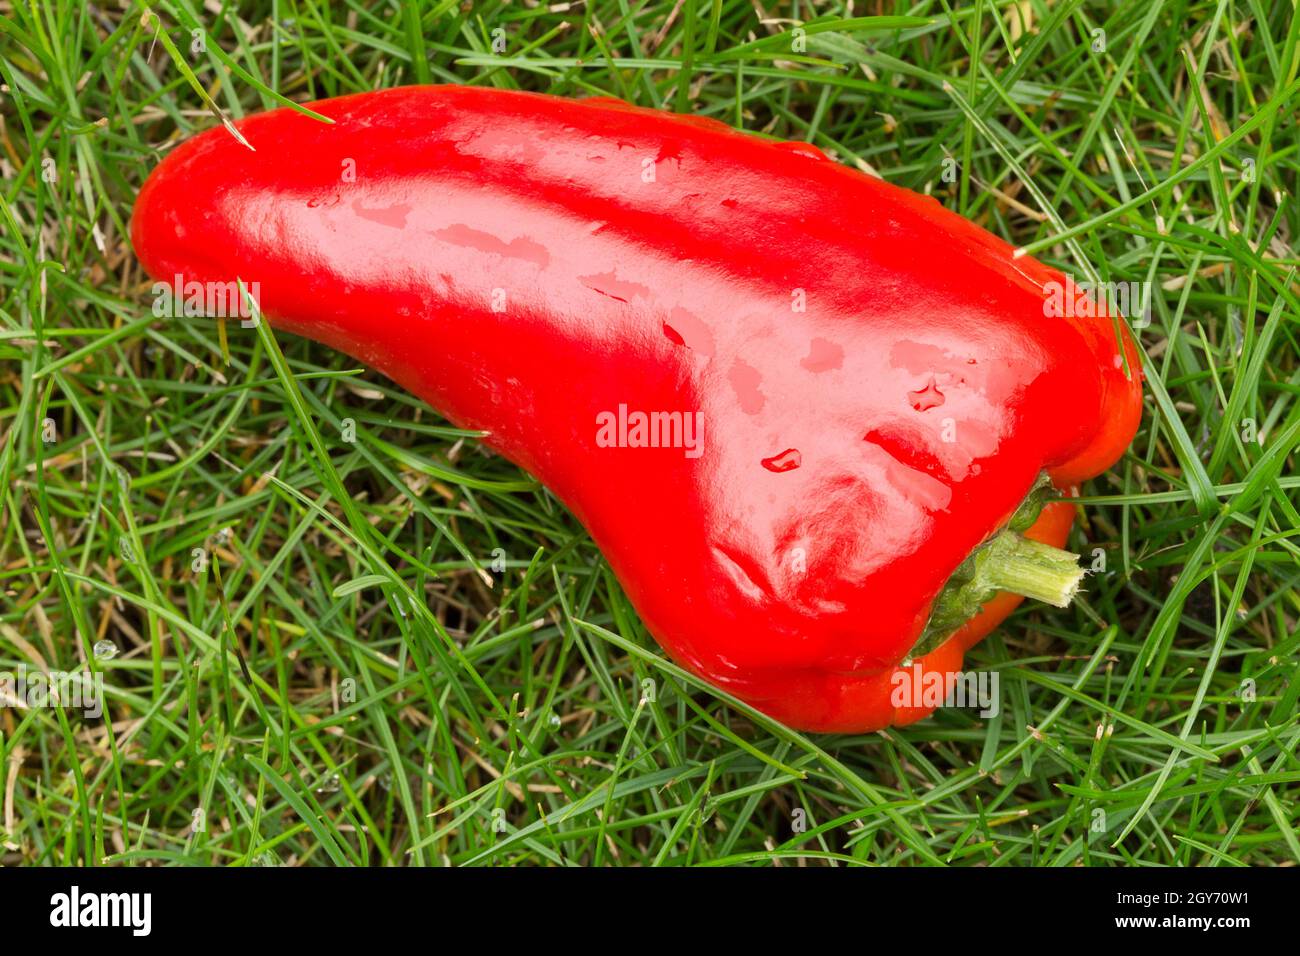 Rote Chilischote auf Gras Hintergrund feucht und glänzend rot auf grünem Bild im Landschaftsformat. Lebensmittelaroma Textur und Farbfarbe Verwenden Sie Gemüse Stockfoto